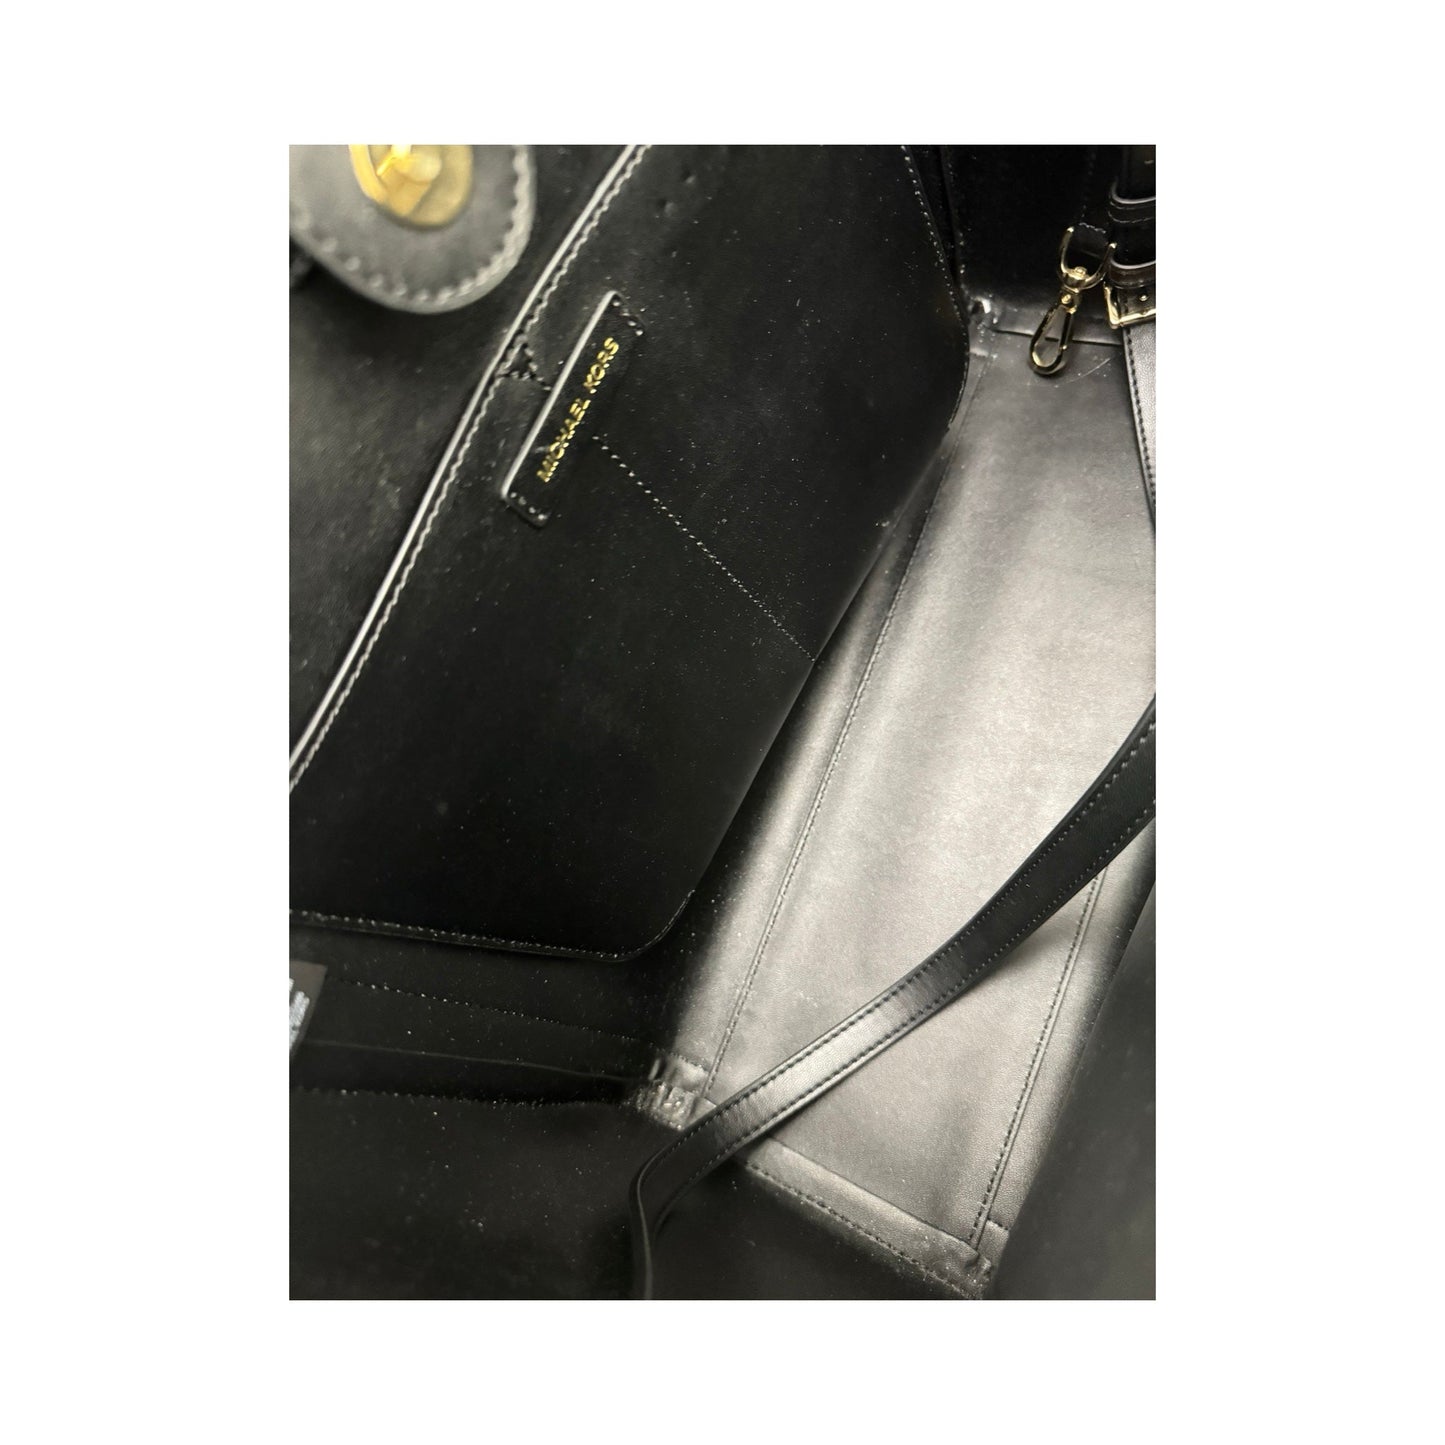 Kali Vegan Leather with Laptop Case Black Tote Shoulder Handbag Designer By Michael Kors  Size: Large